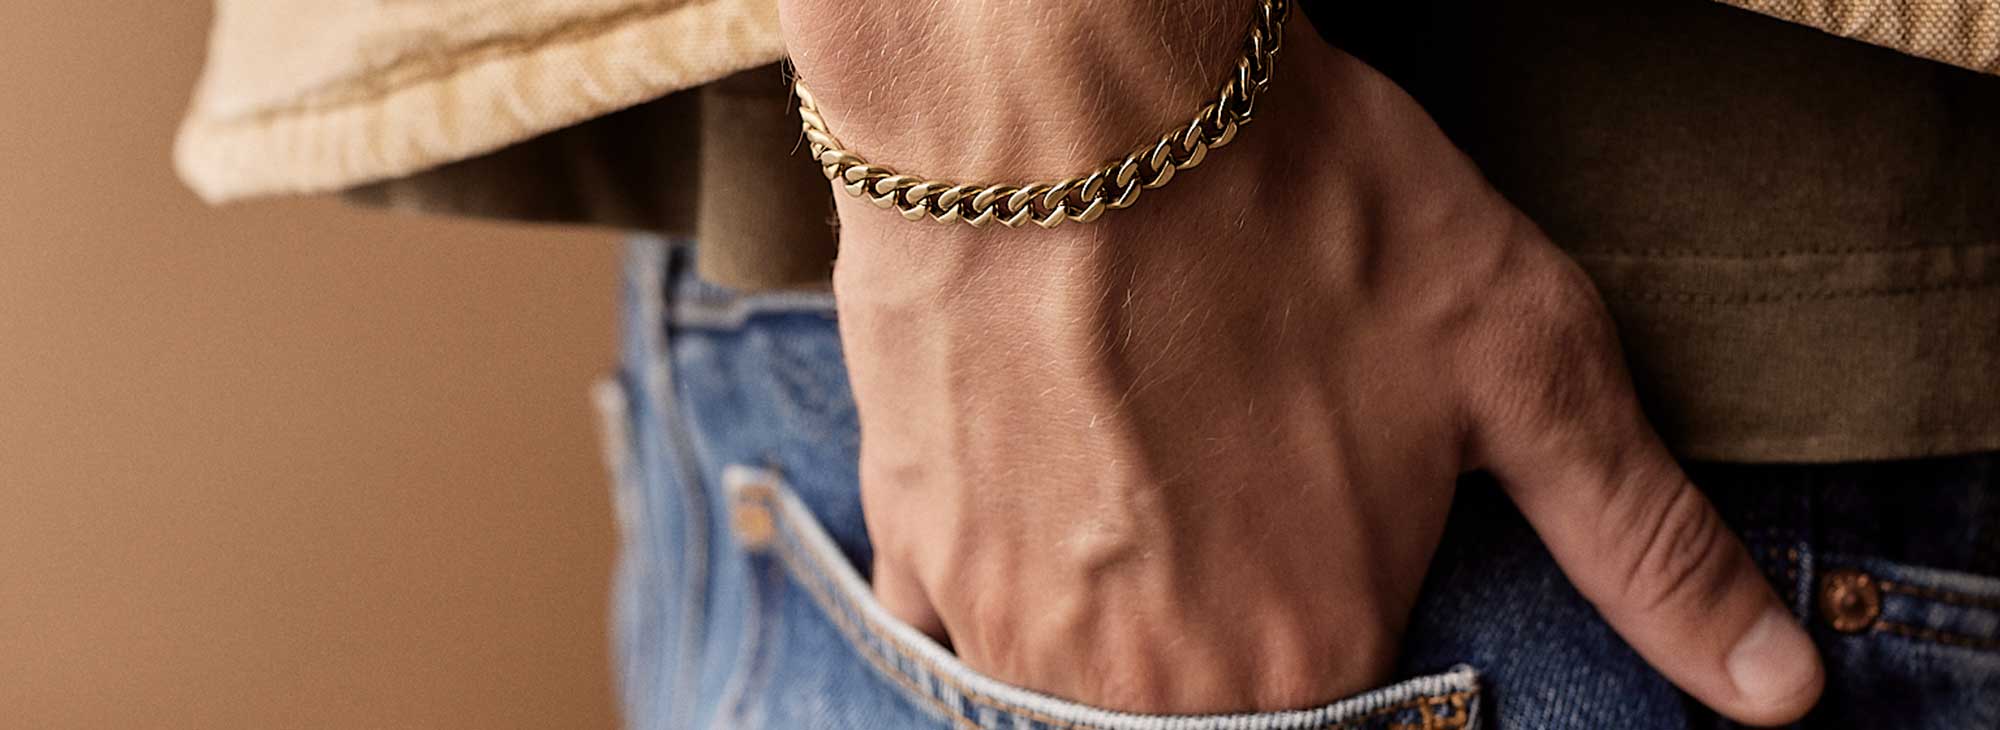 Skin friendly bracelets for men